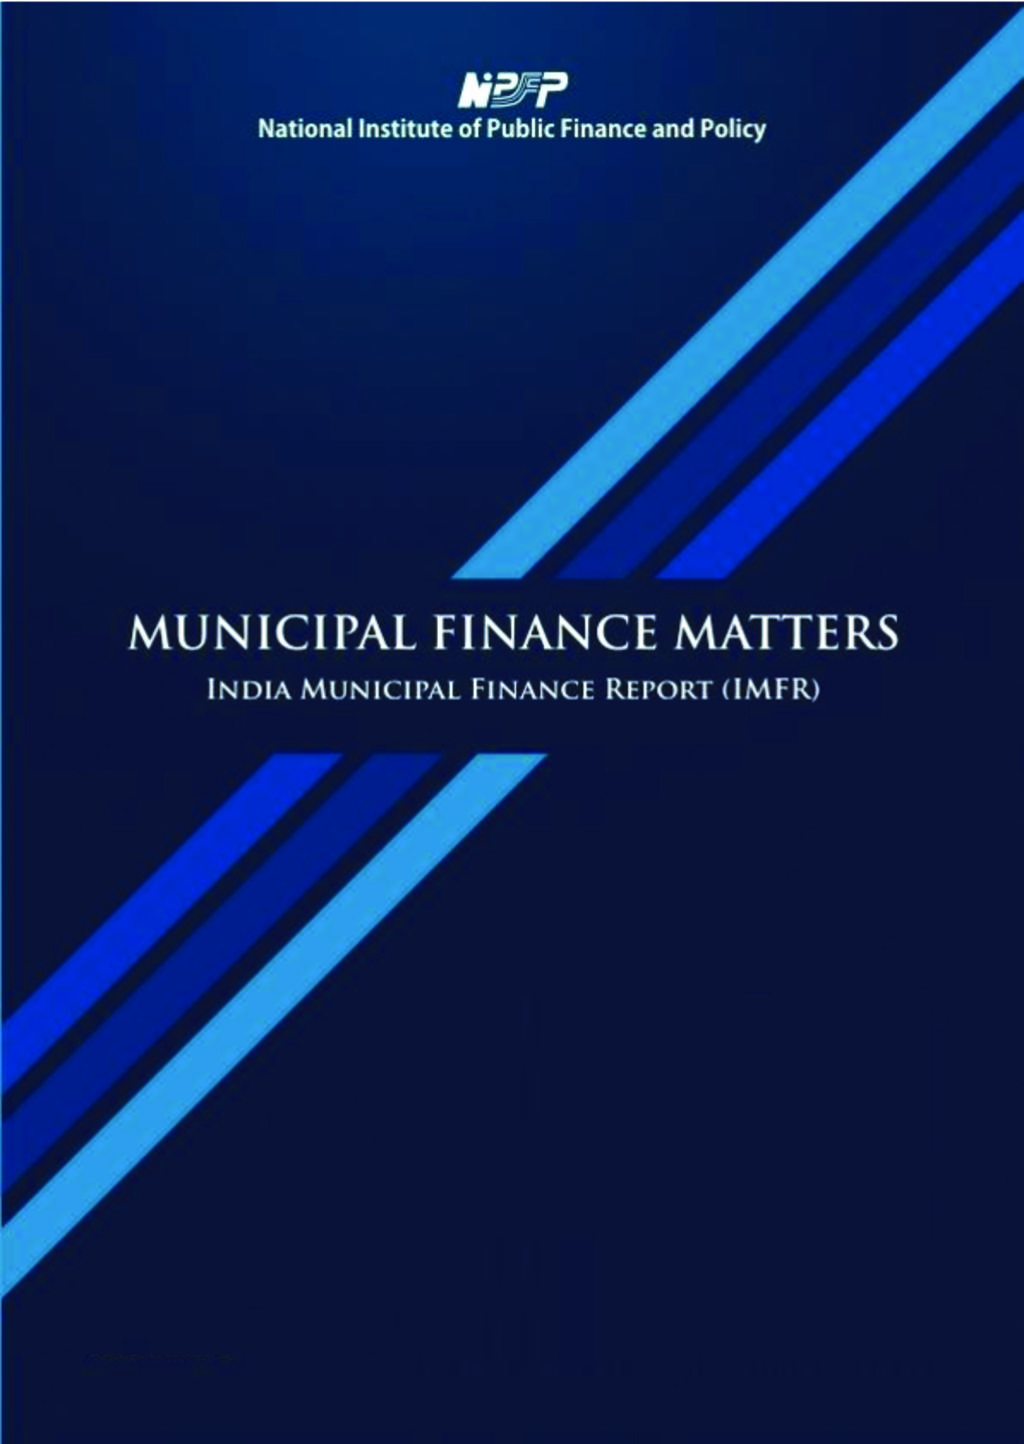 Municipal Finance Matters: India Municipal Finance Report (IMFR)